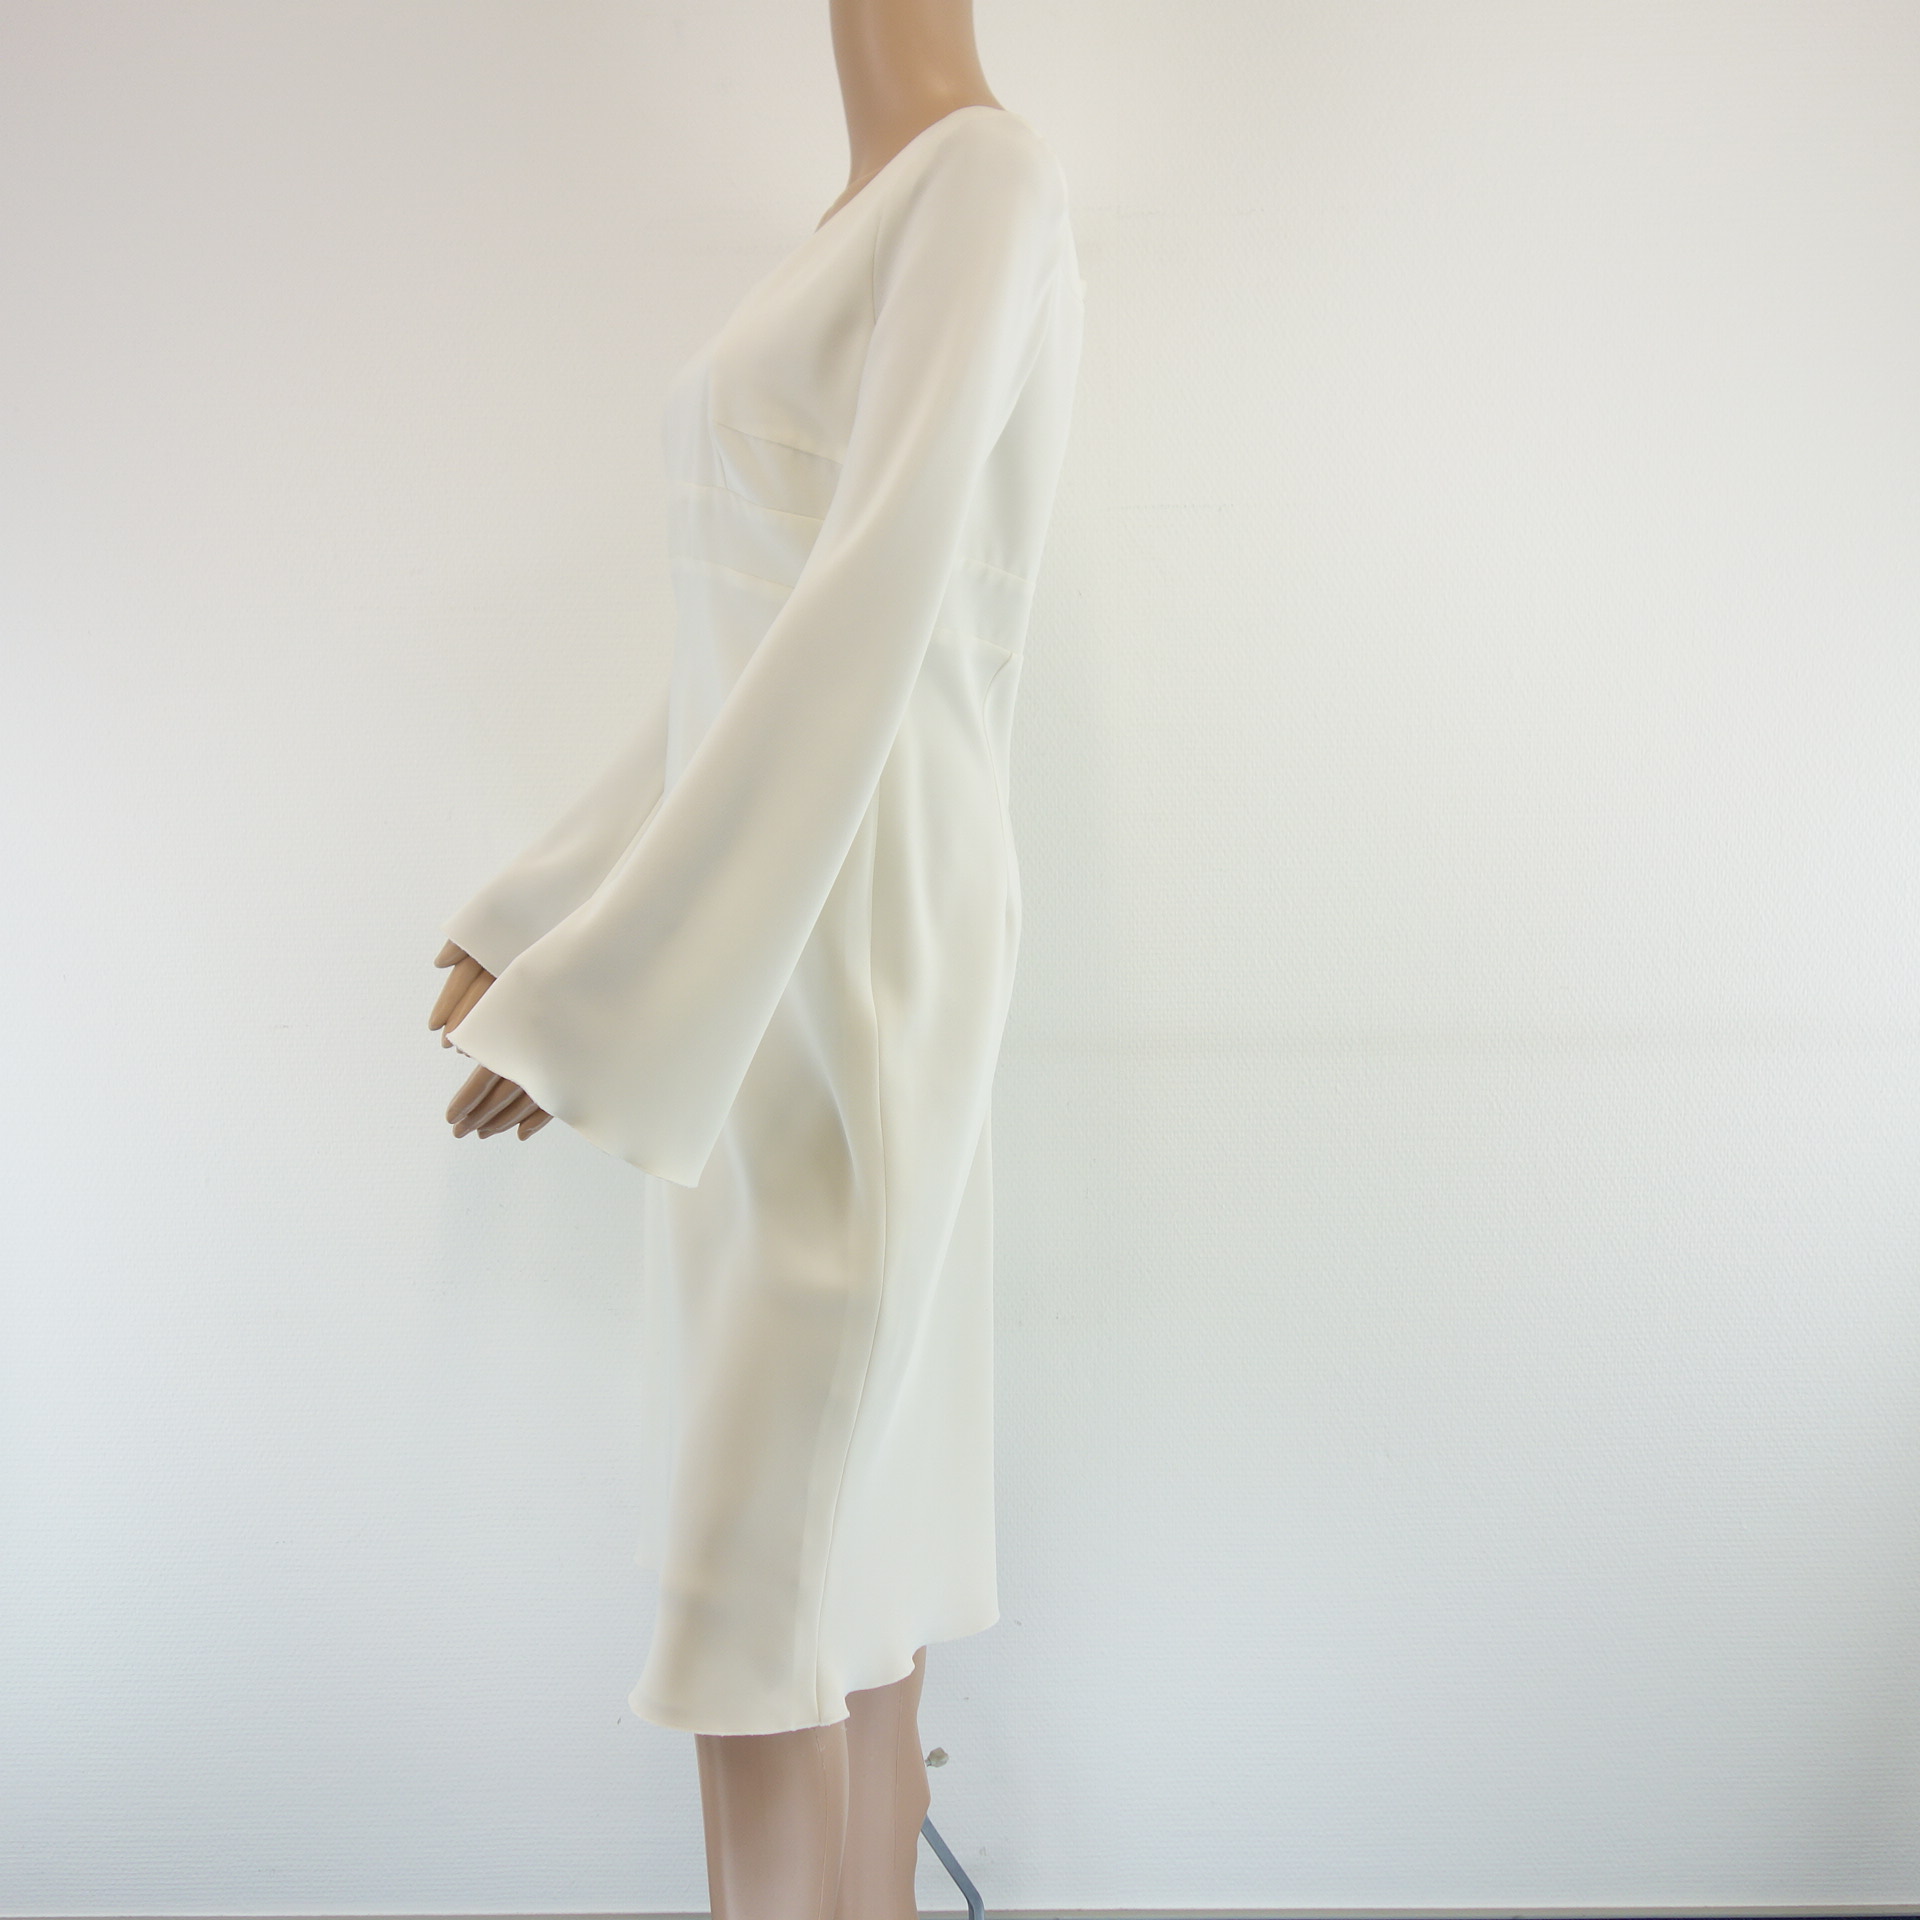 Kleid BETTINA SCHOENBACH Damen Kleid Weiß Festlich Schwingend Größe 38